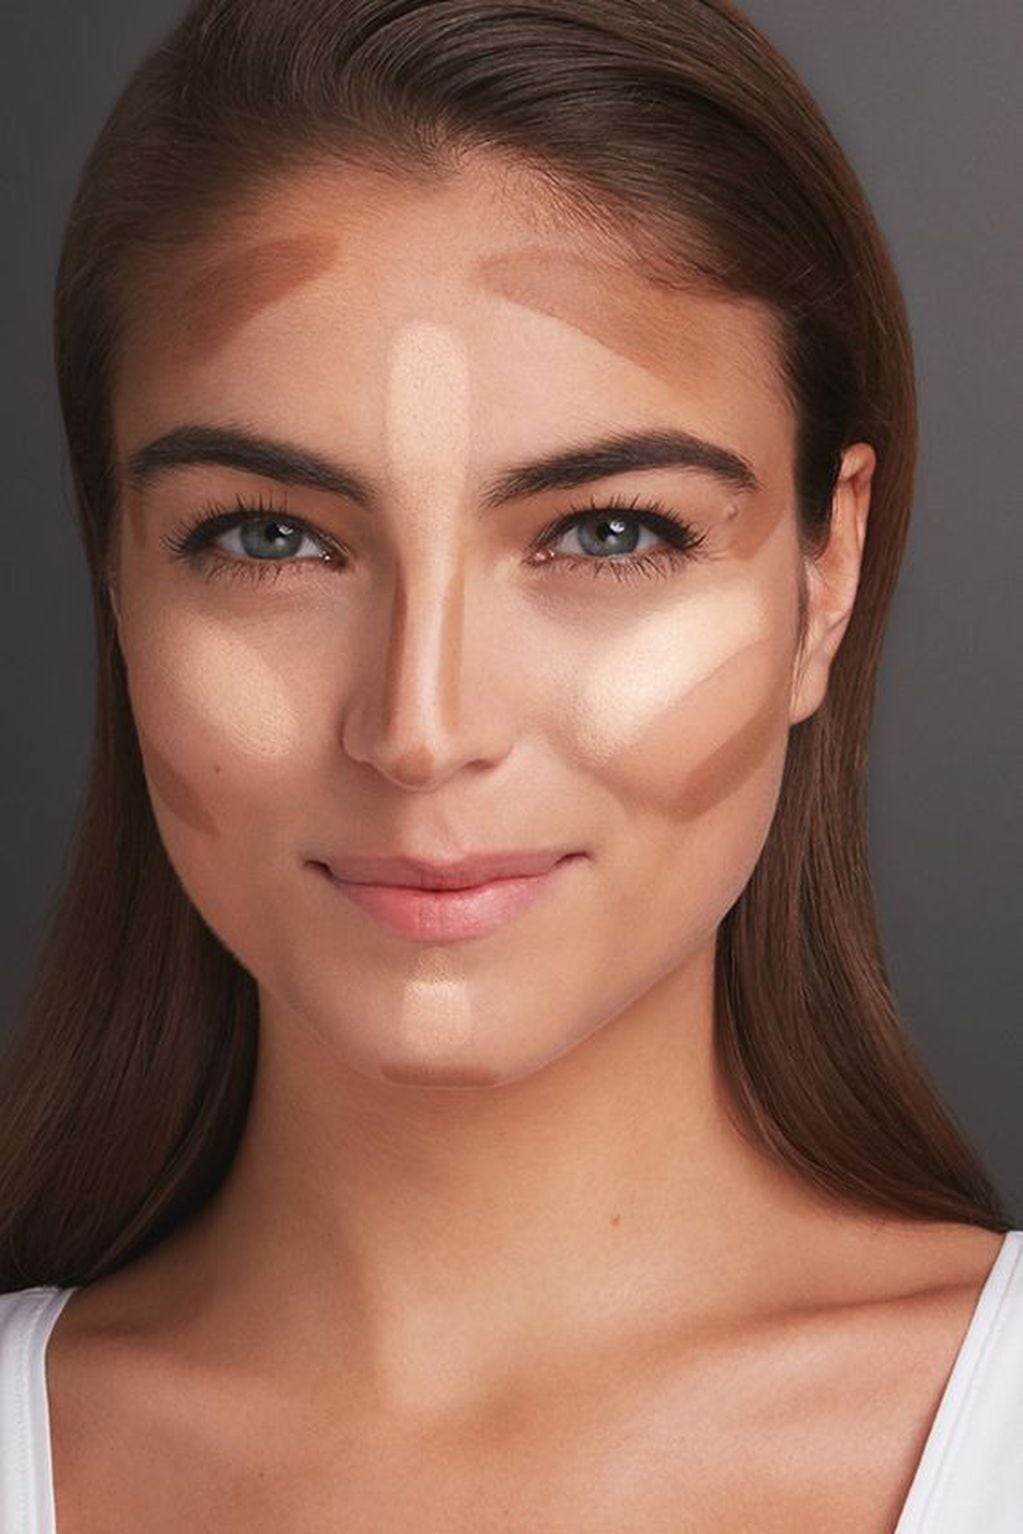 Podes usar la base clara directamente en tu rostro pero en muy poca cantidad, y compensar con un buen contorno y bronzer que compense el tono de la base. 